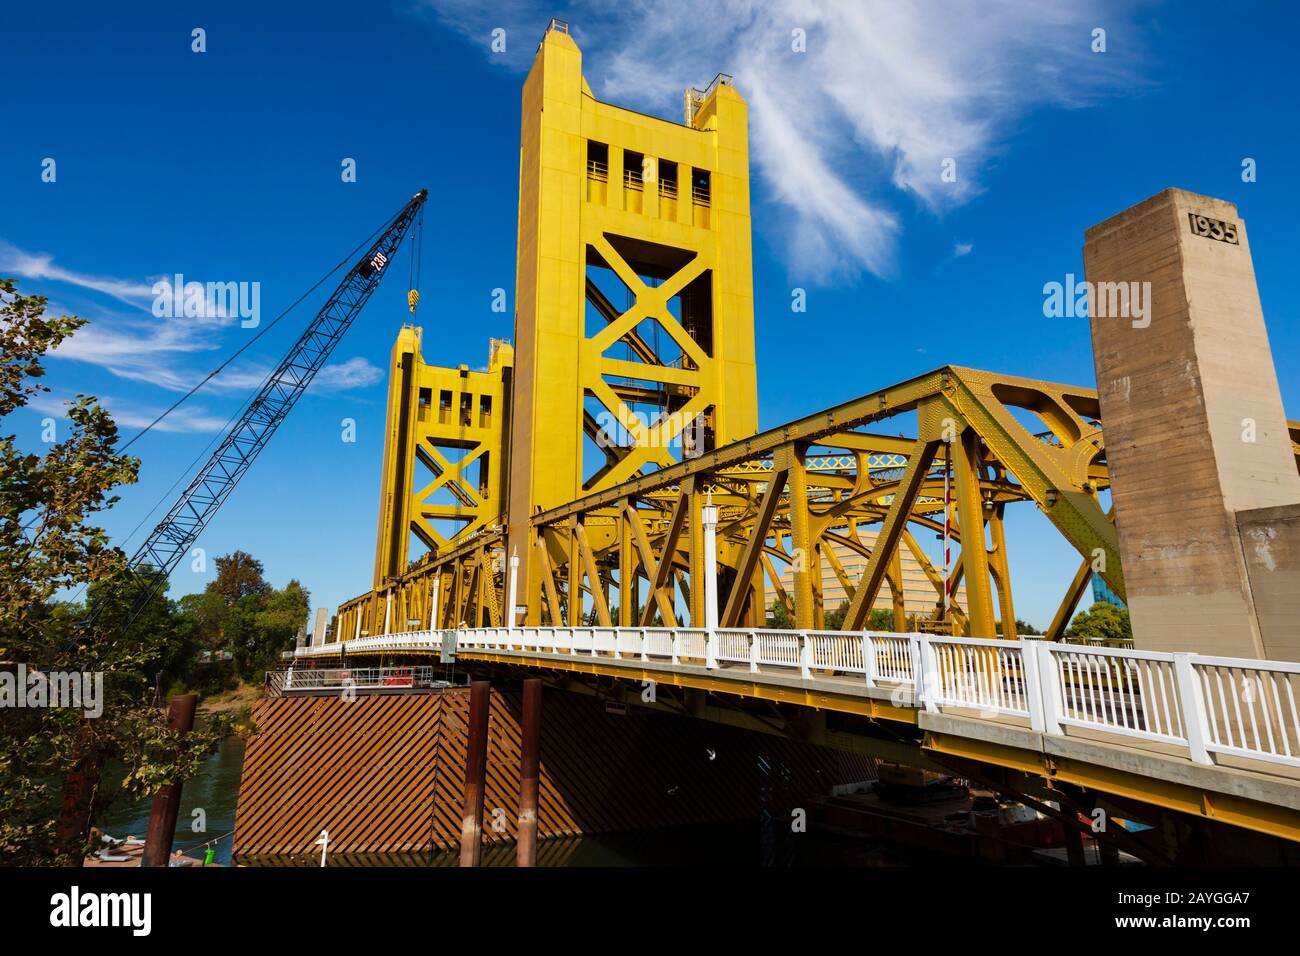 The gold painted Tower Bridge over the Sacramento River, Sacramento, California, USA Stock Photo